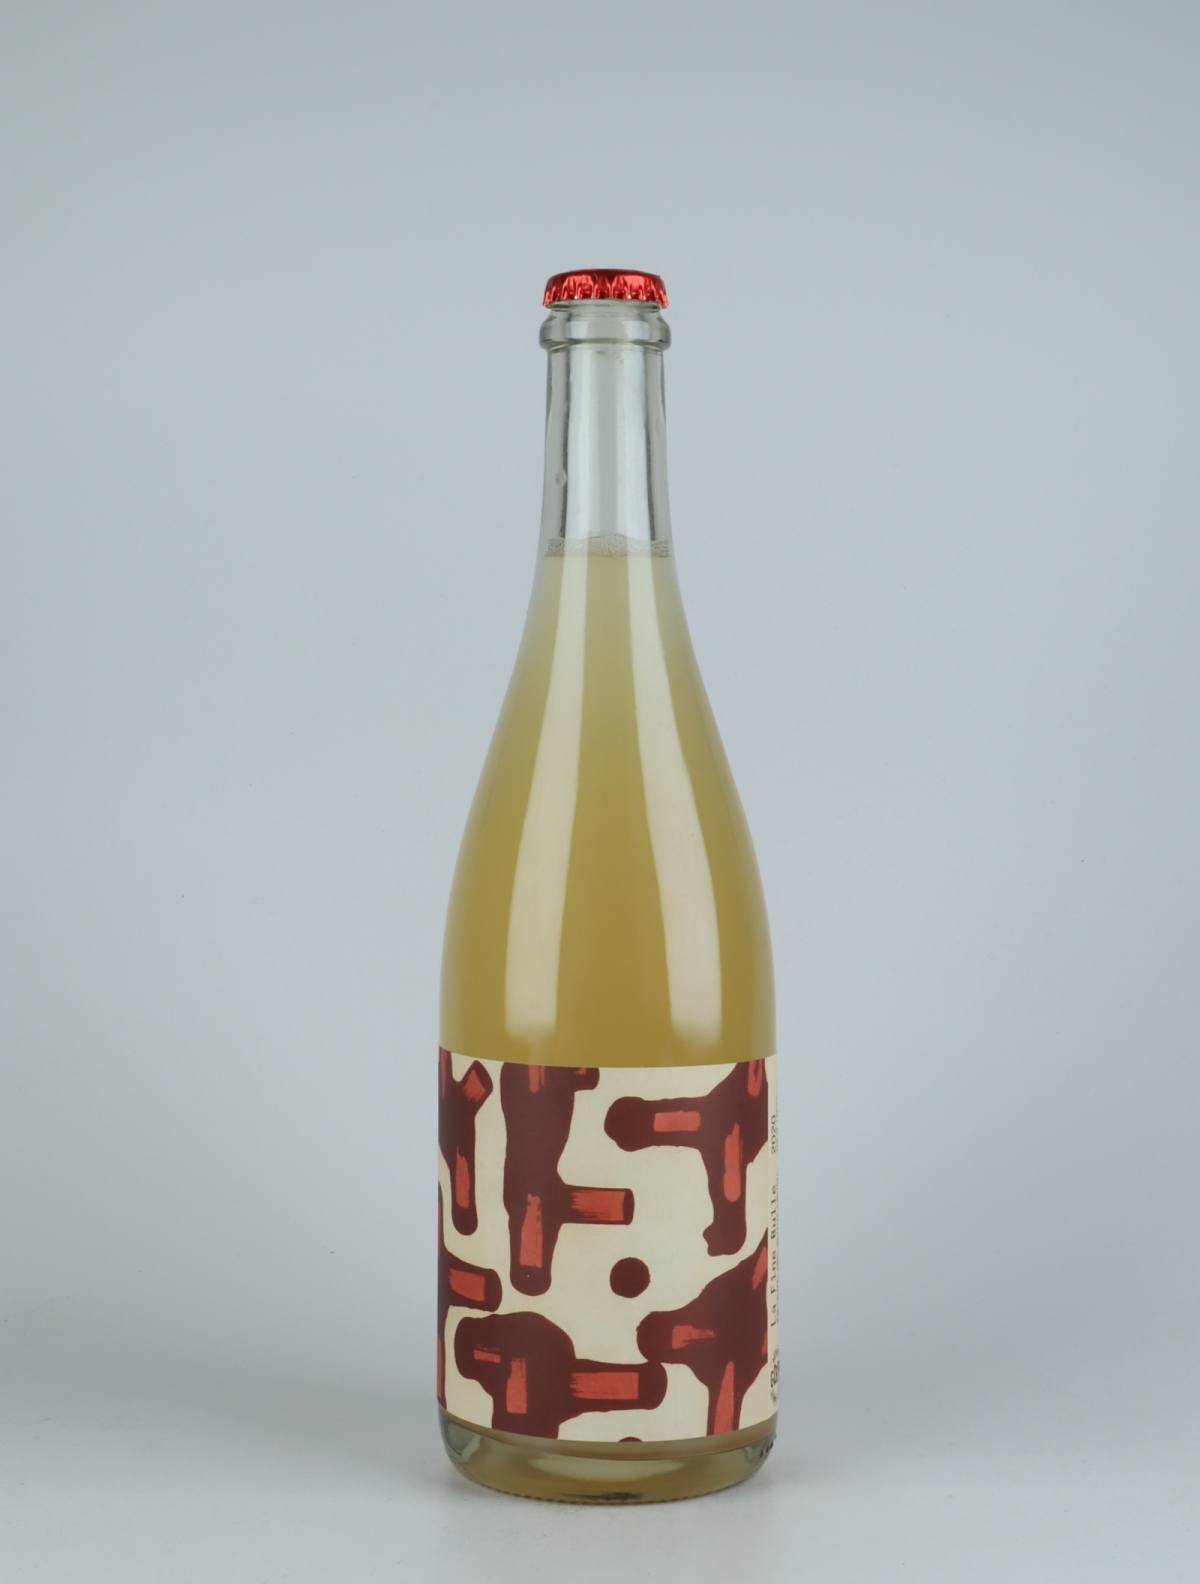 En flaske 2020 La Fine Bulle Mousserende fra Domaine Goepp, Alsace i Frankrig